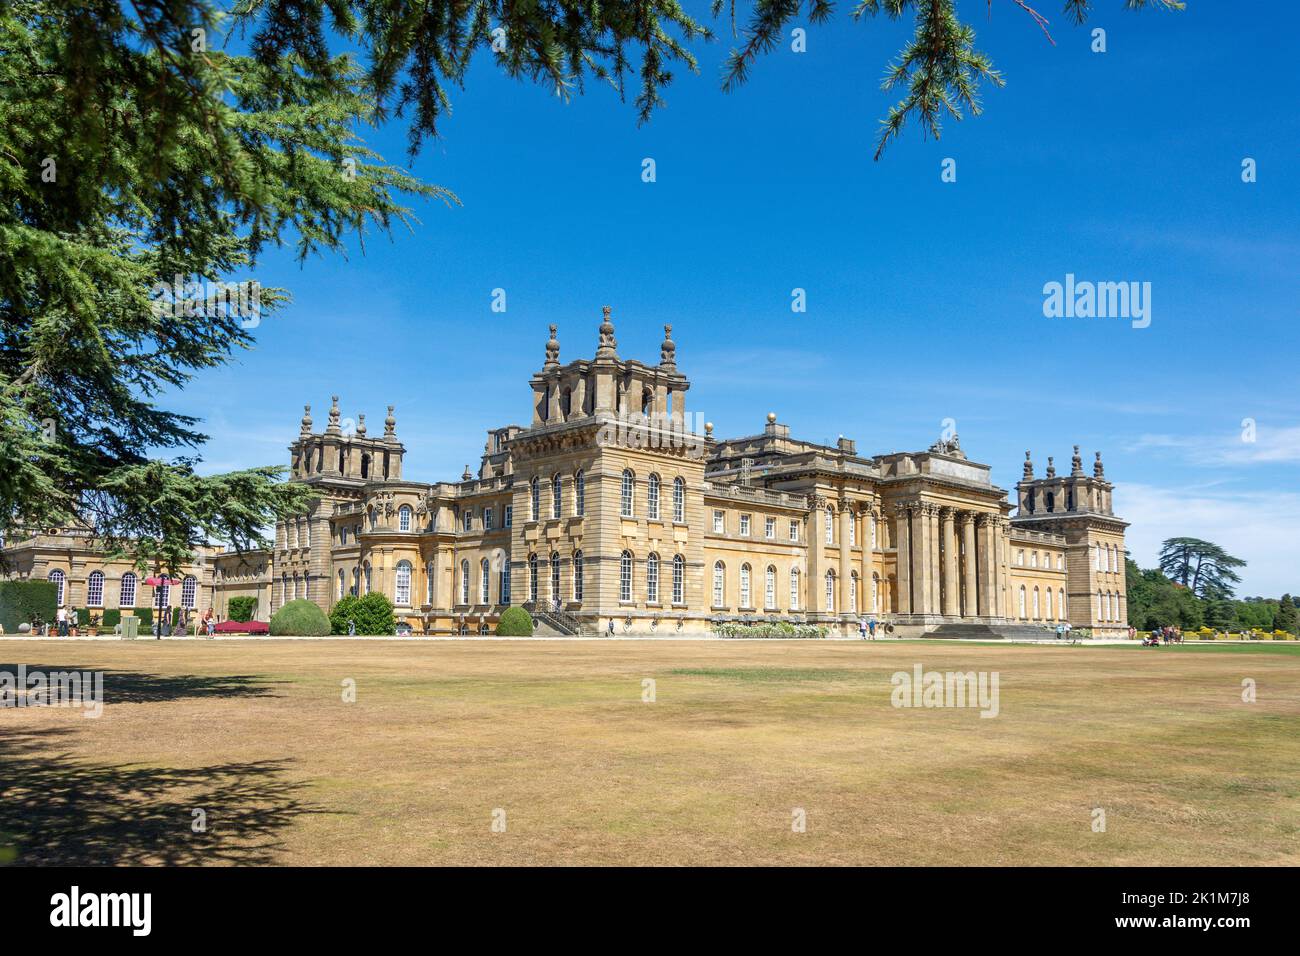 Vue sur le palais depuis la pelouse sud, le palais de Blenheim, Woodstock, Oxfordshire, Angleterre, Royaume-Uni Banque D'Images